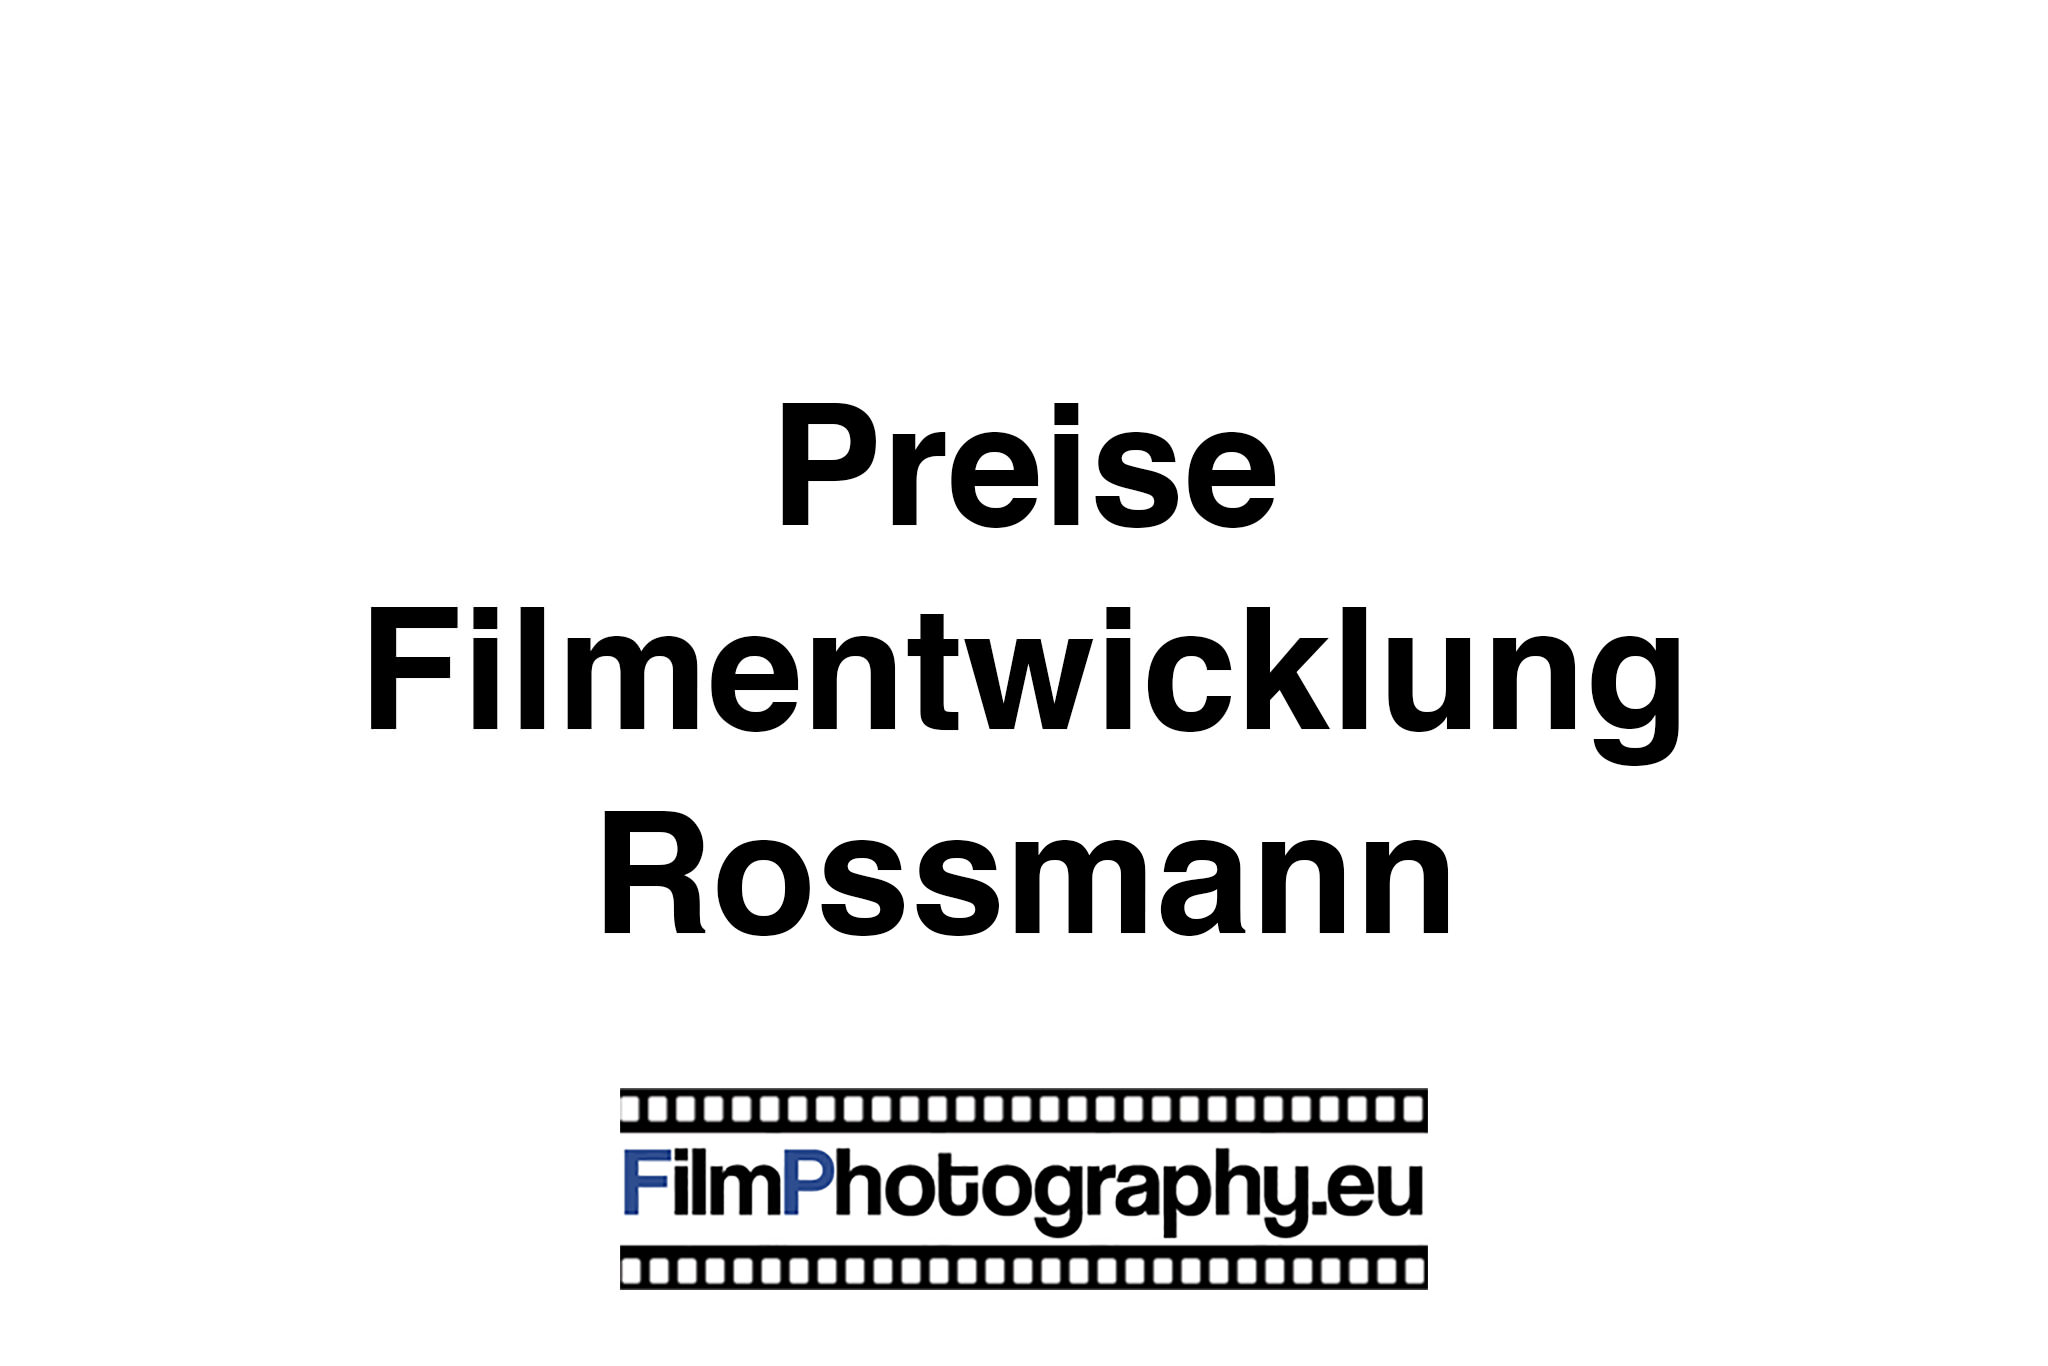 Filmentwicklung bei Rossmann - Preise, Dauer und Angeot